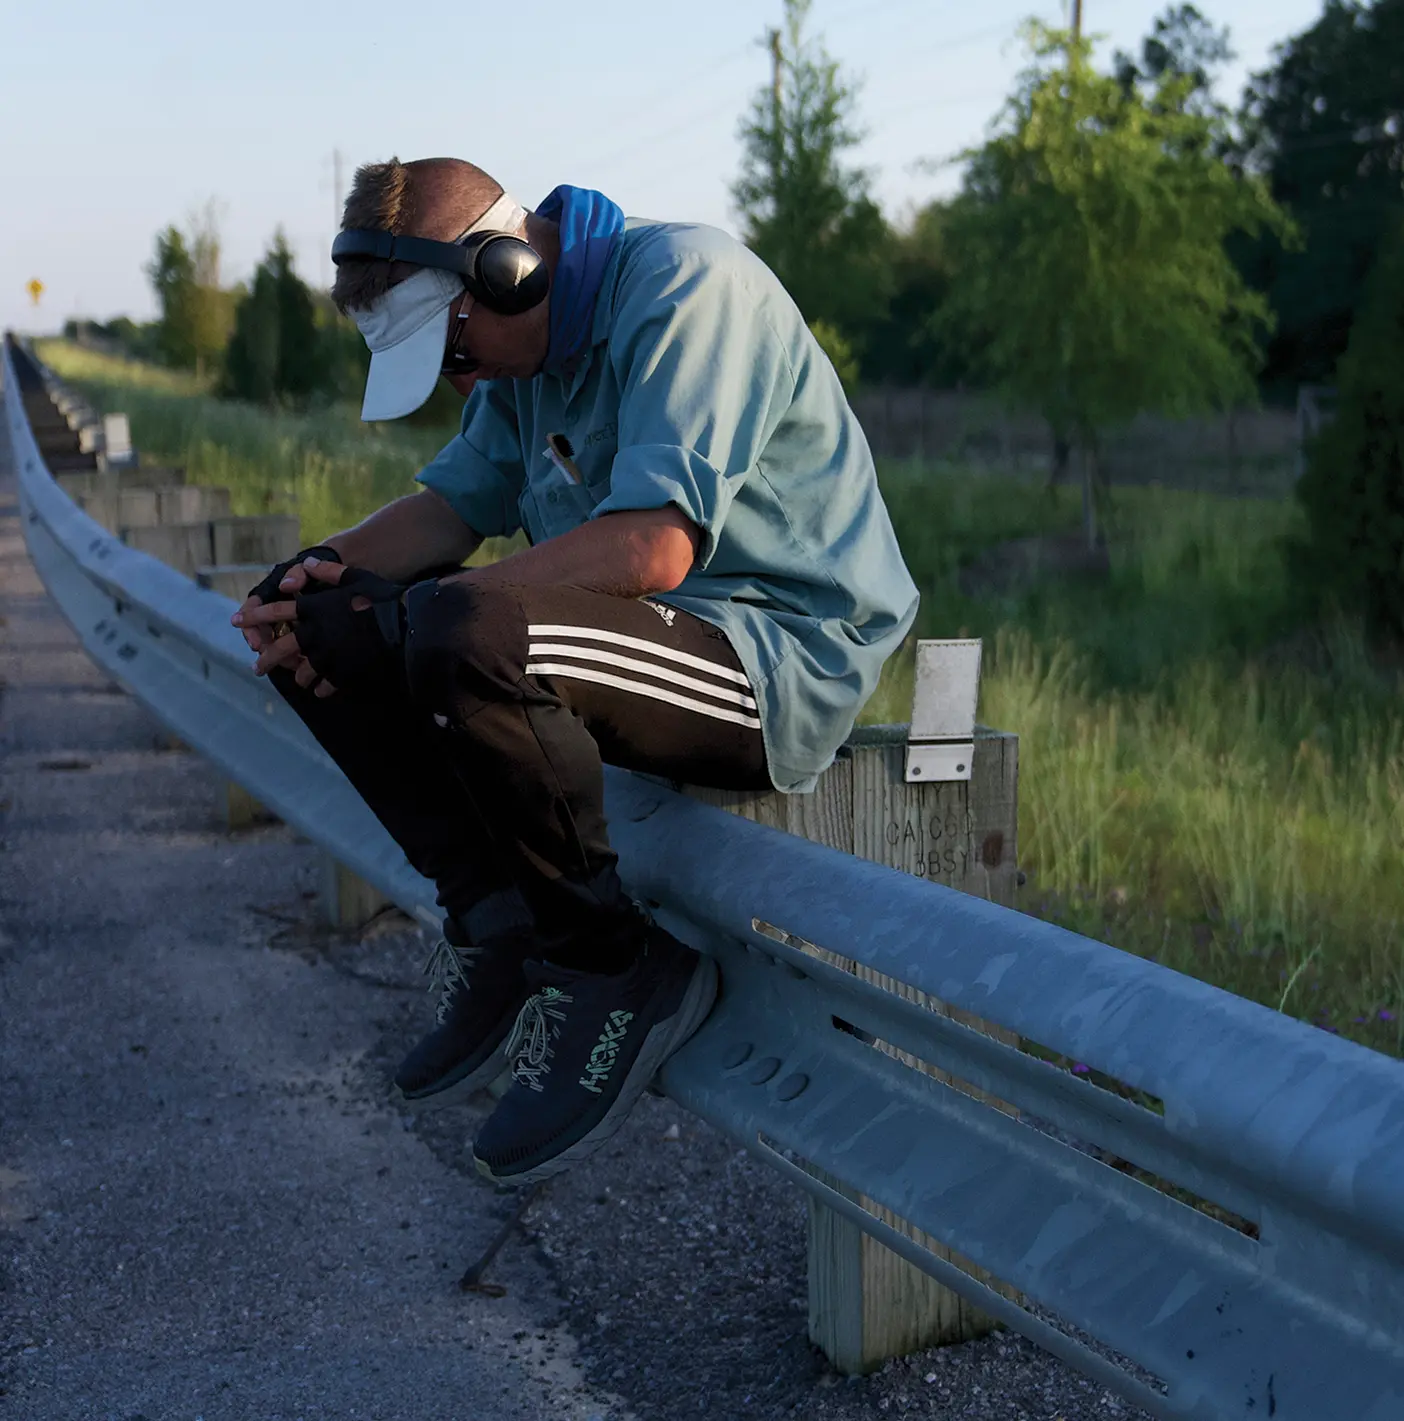 Isaiah Shields sitting alongside a road in Louisiana.